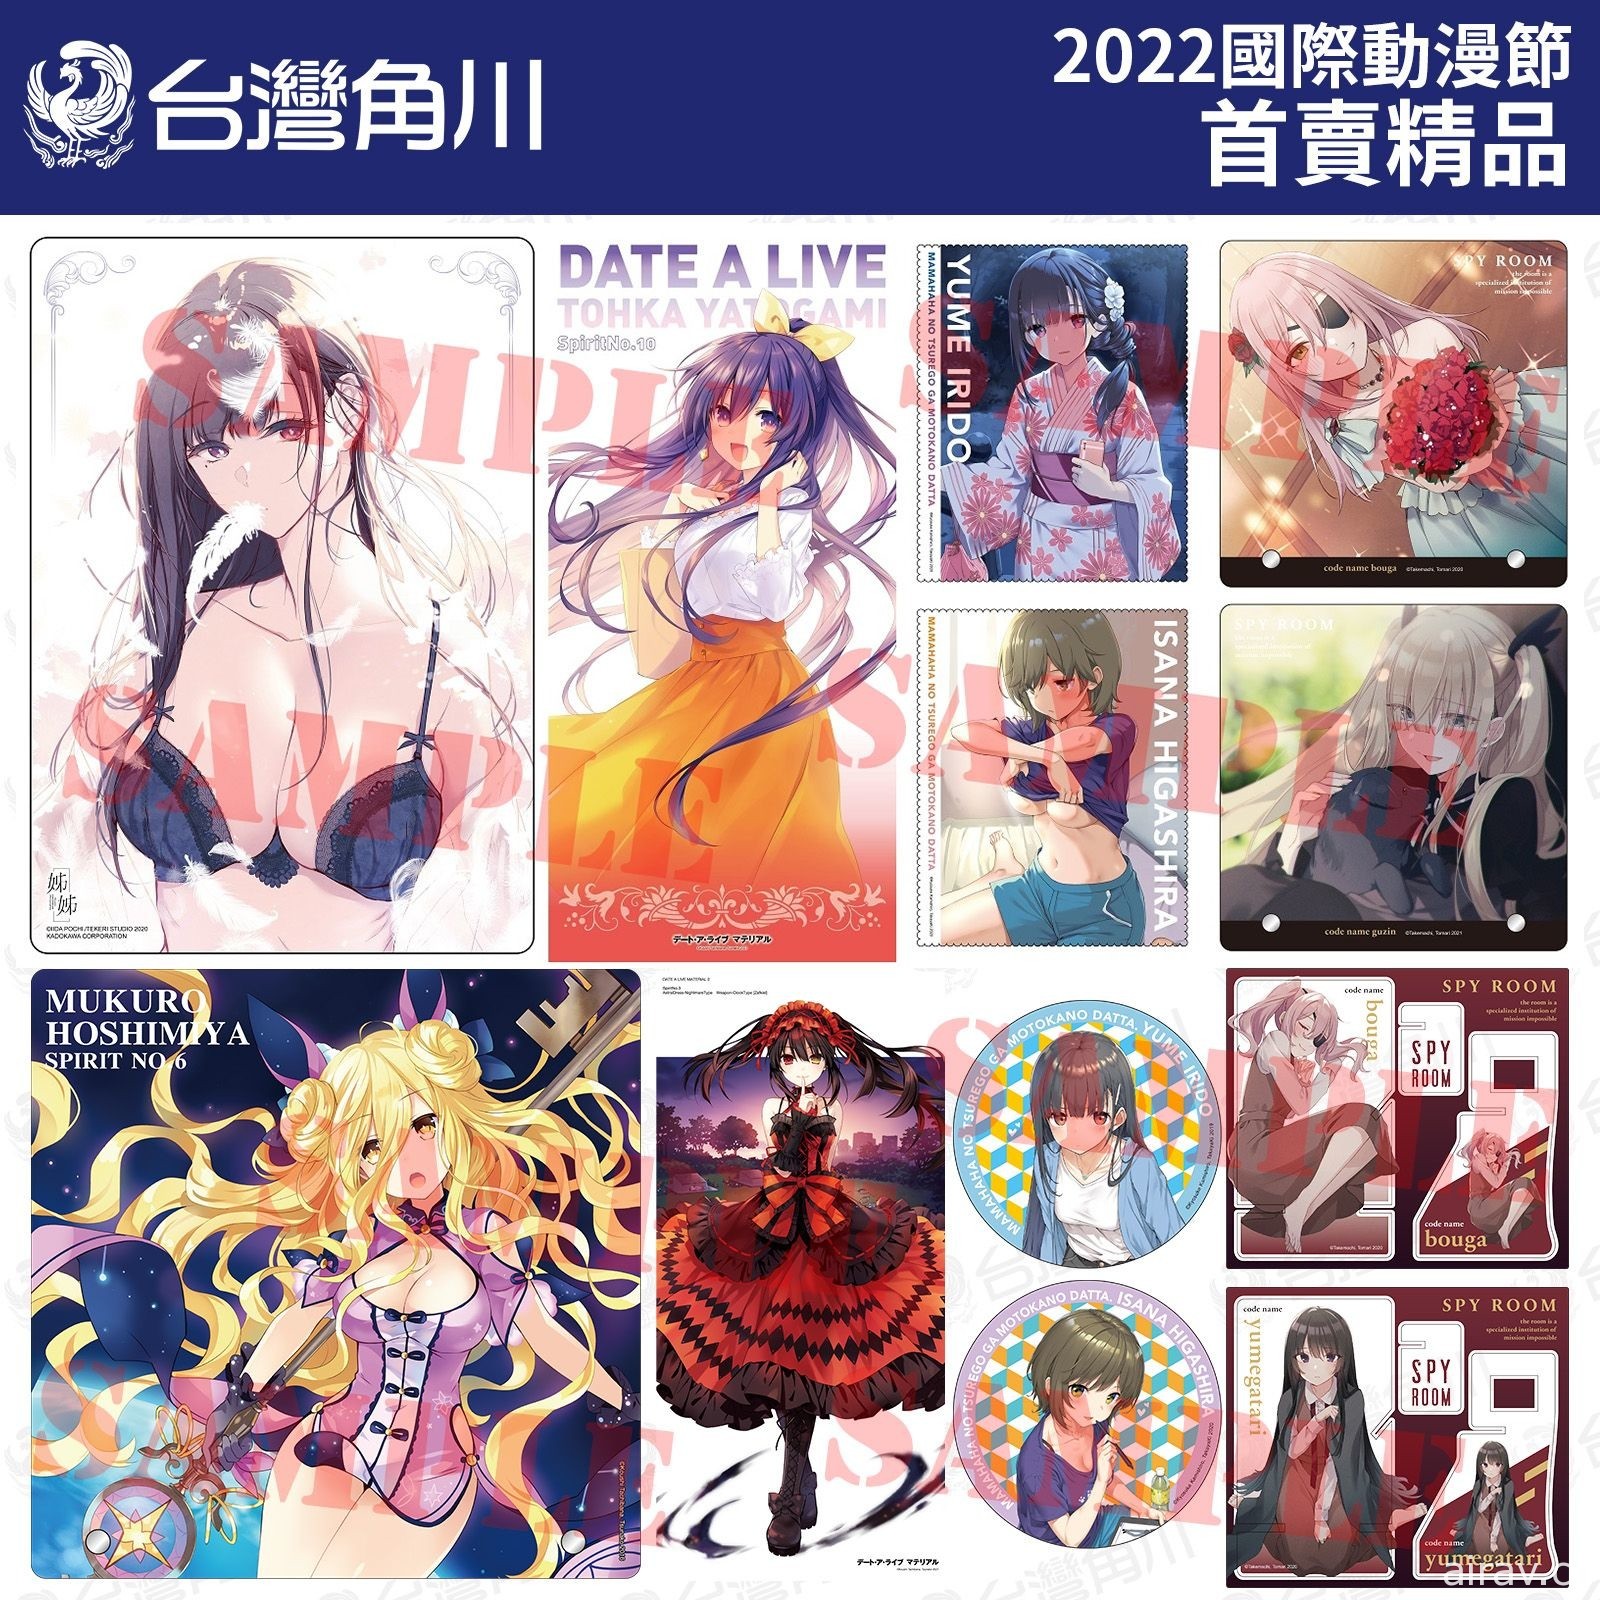 【TiCA22】台灣角川公布 2022 台北國際動漫節首發新書以及週邊商品資訊